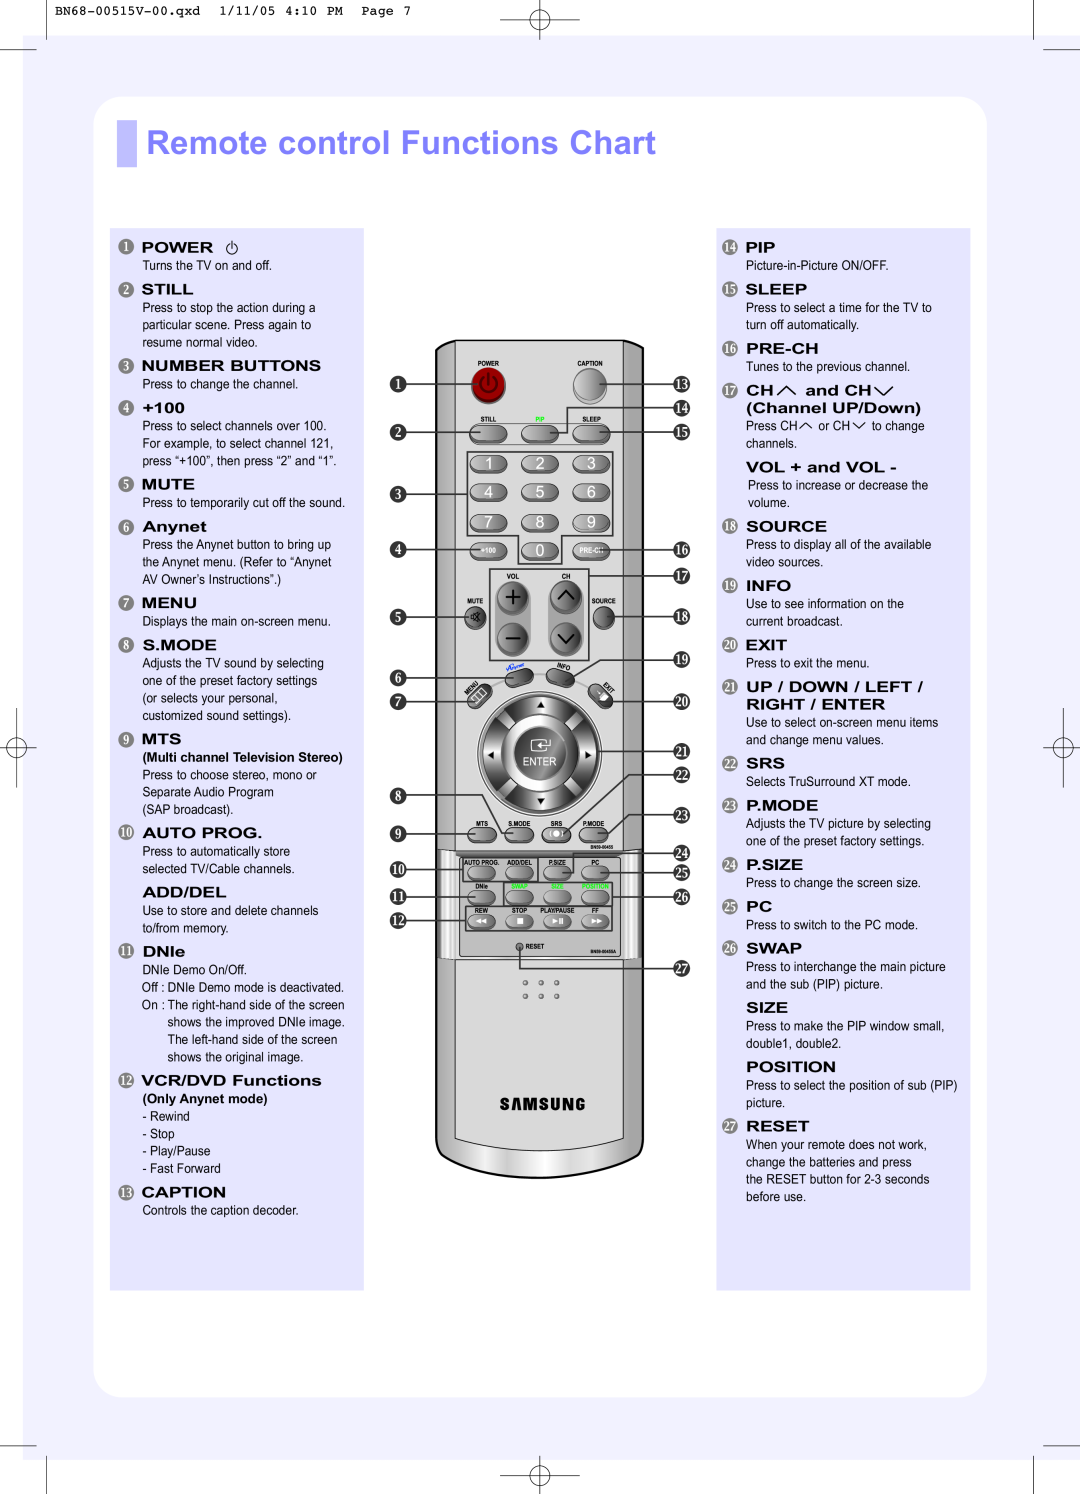 Samsung LN-R268W, LN-R328W, LN-R238W manual Remote control Functions Chart 